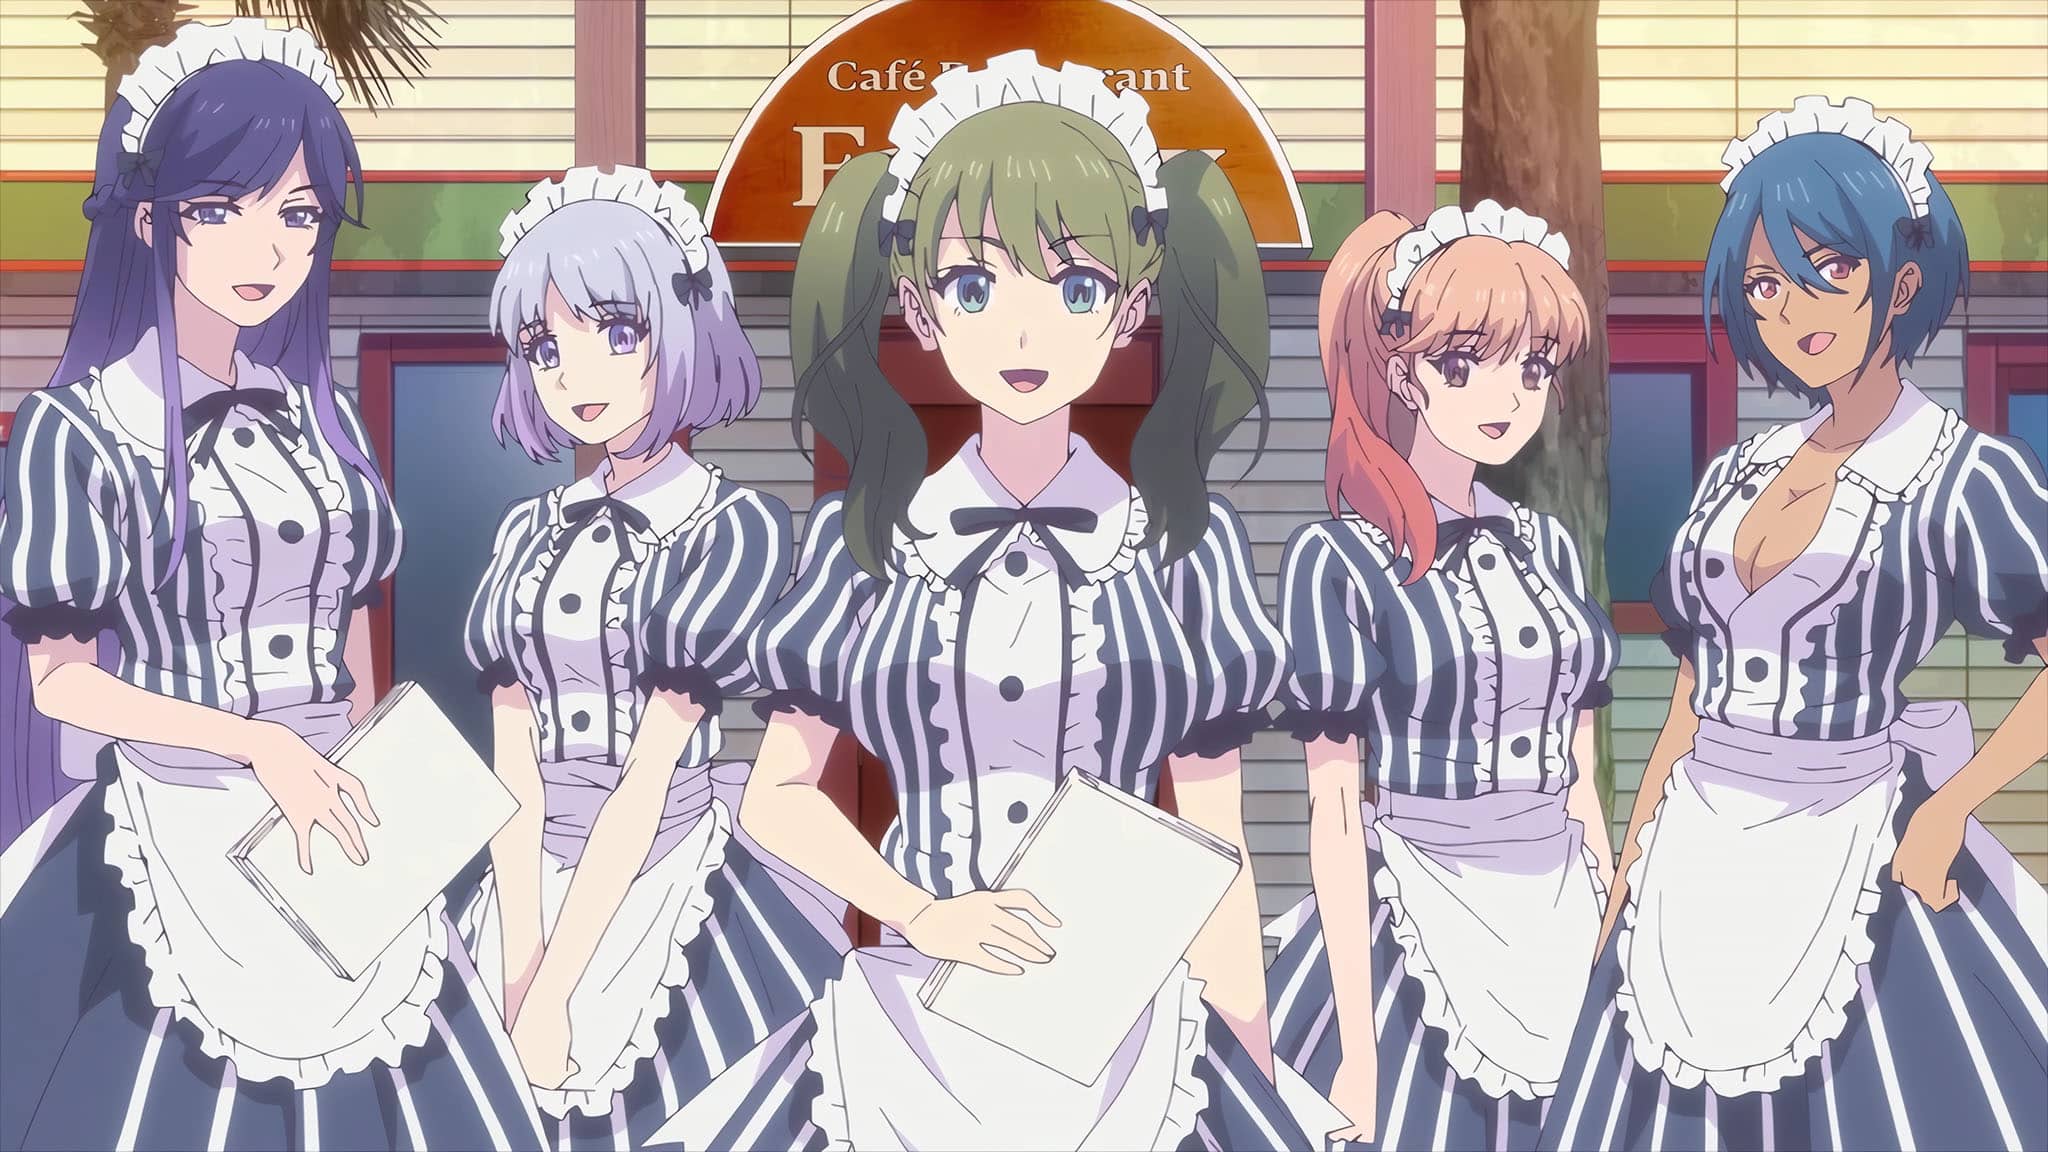 Premier trailer pour la saison 2 de l'anime The Cafe Terrace.